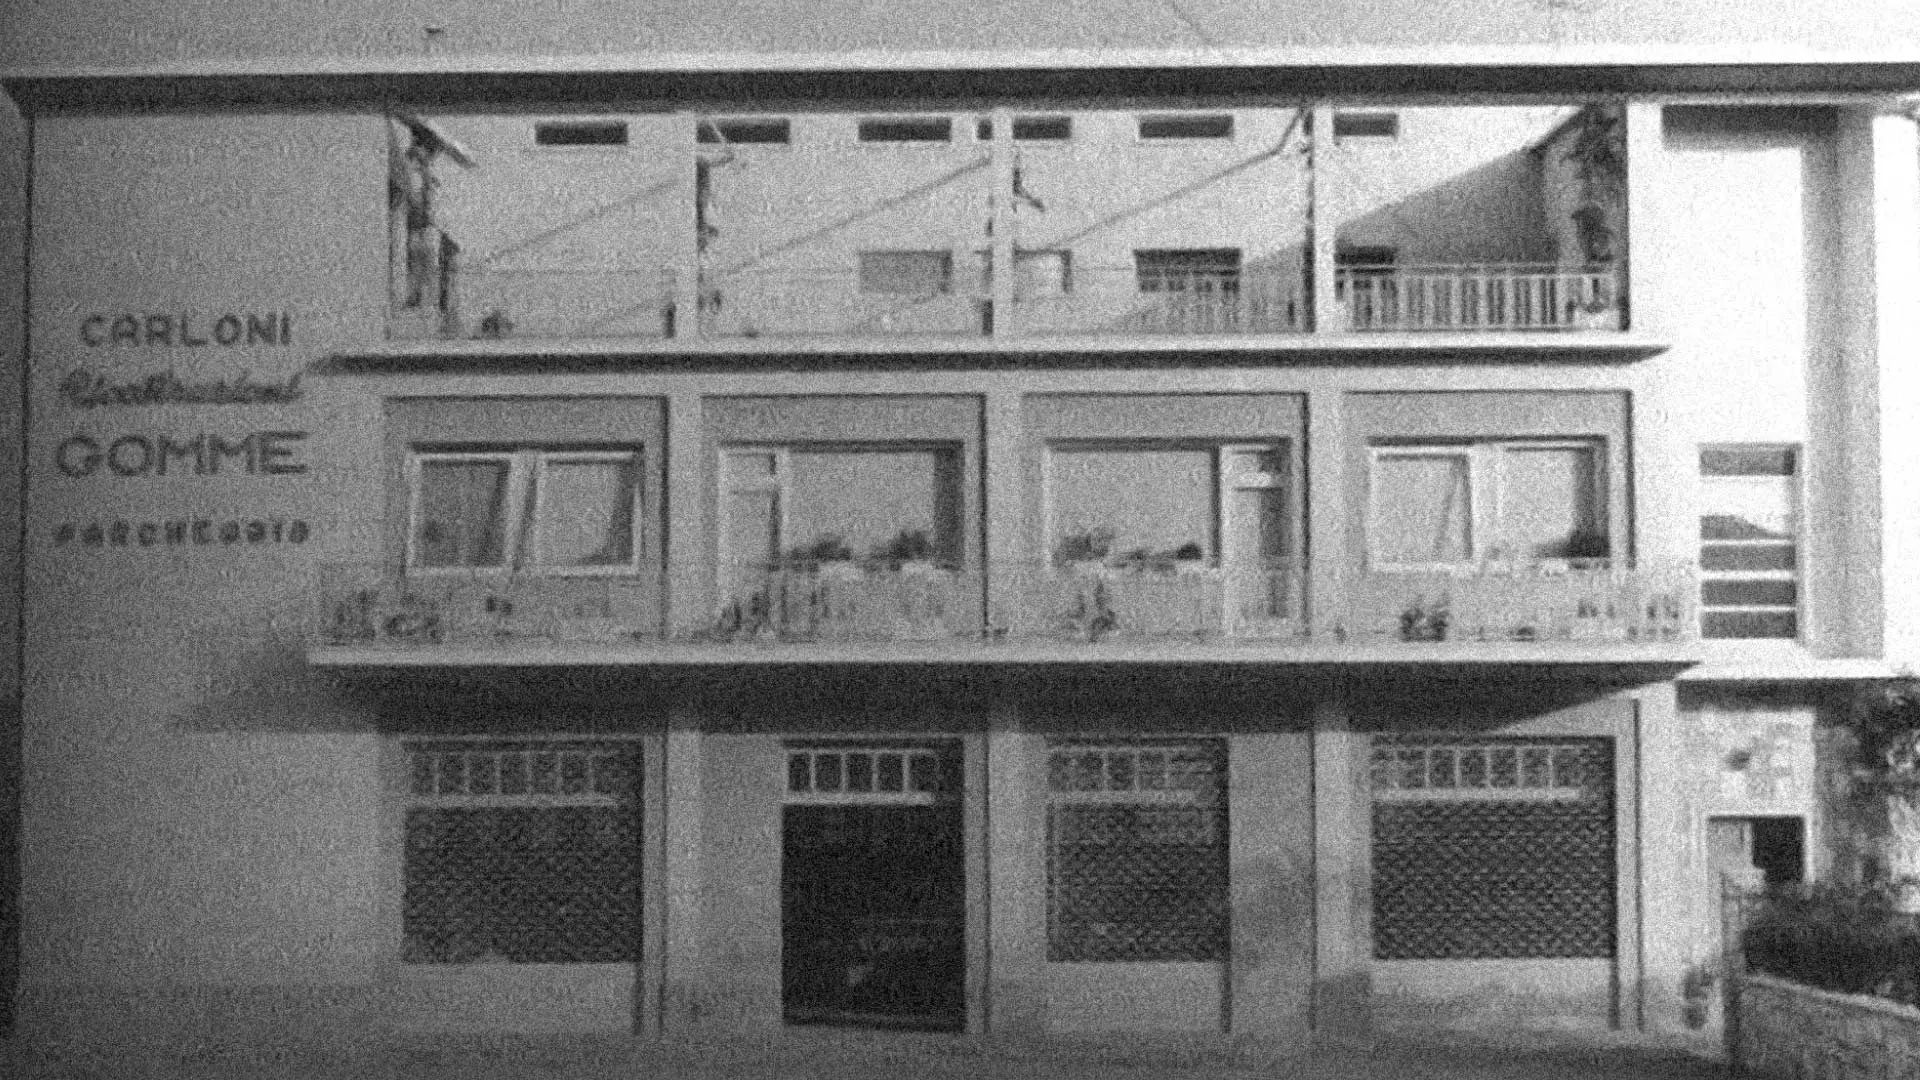 carloni-esterno-negozio-anni-60